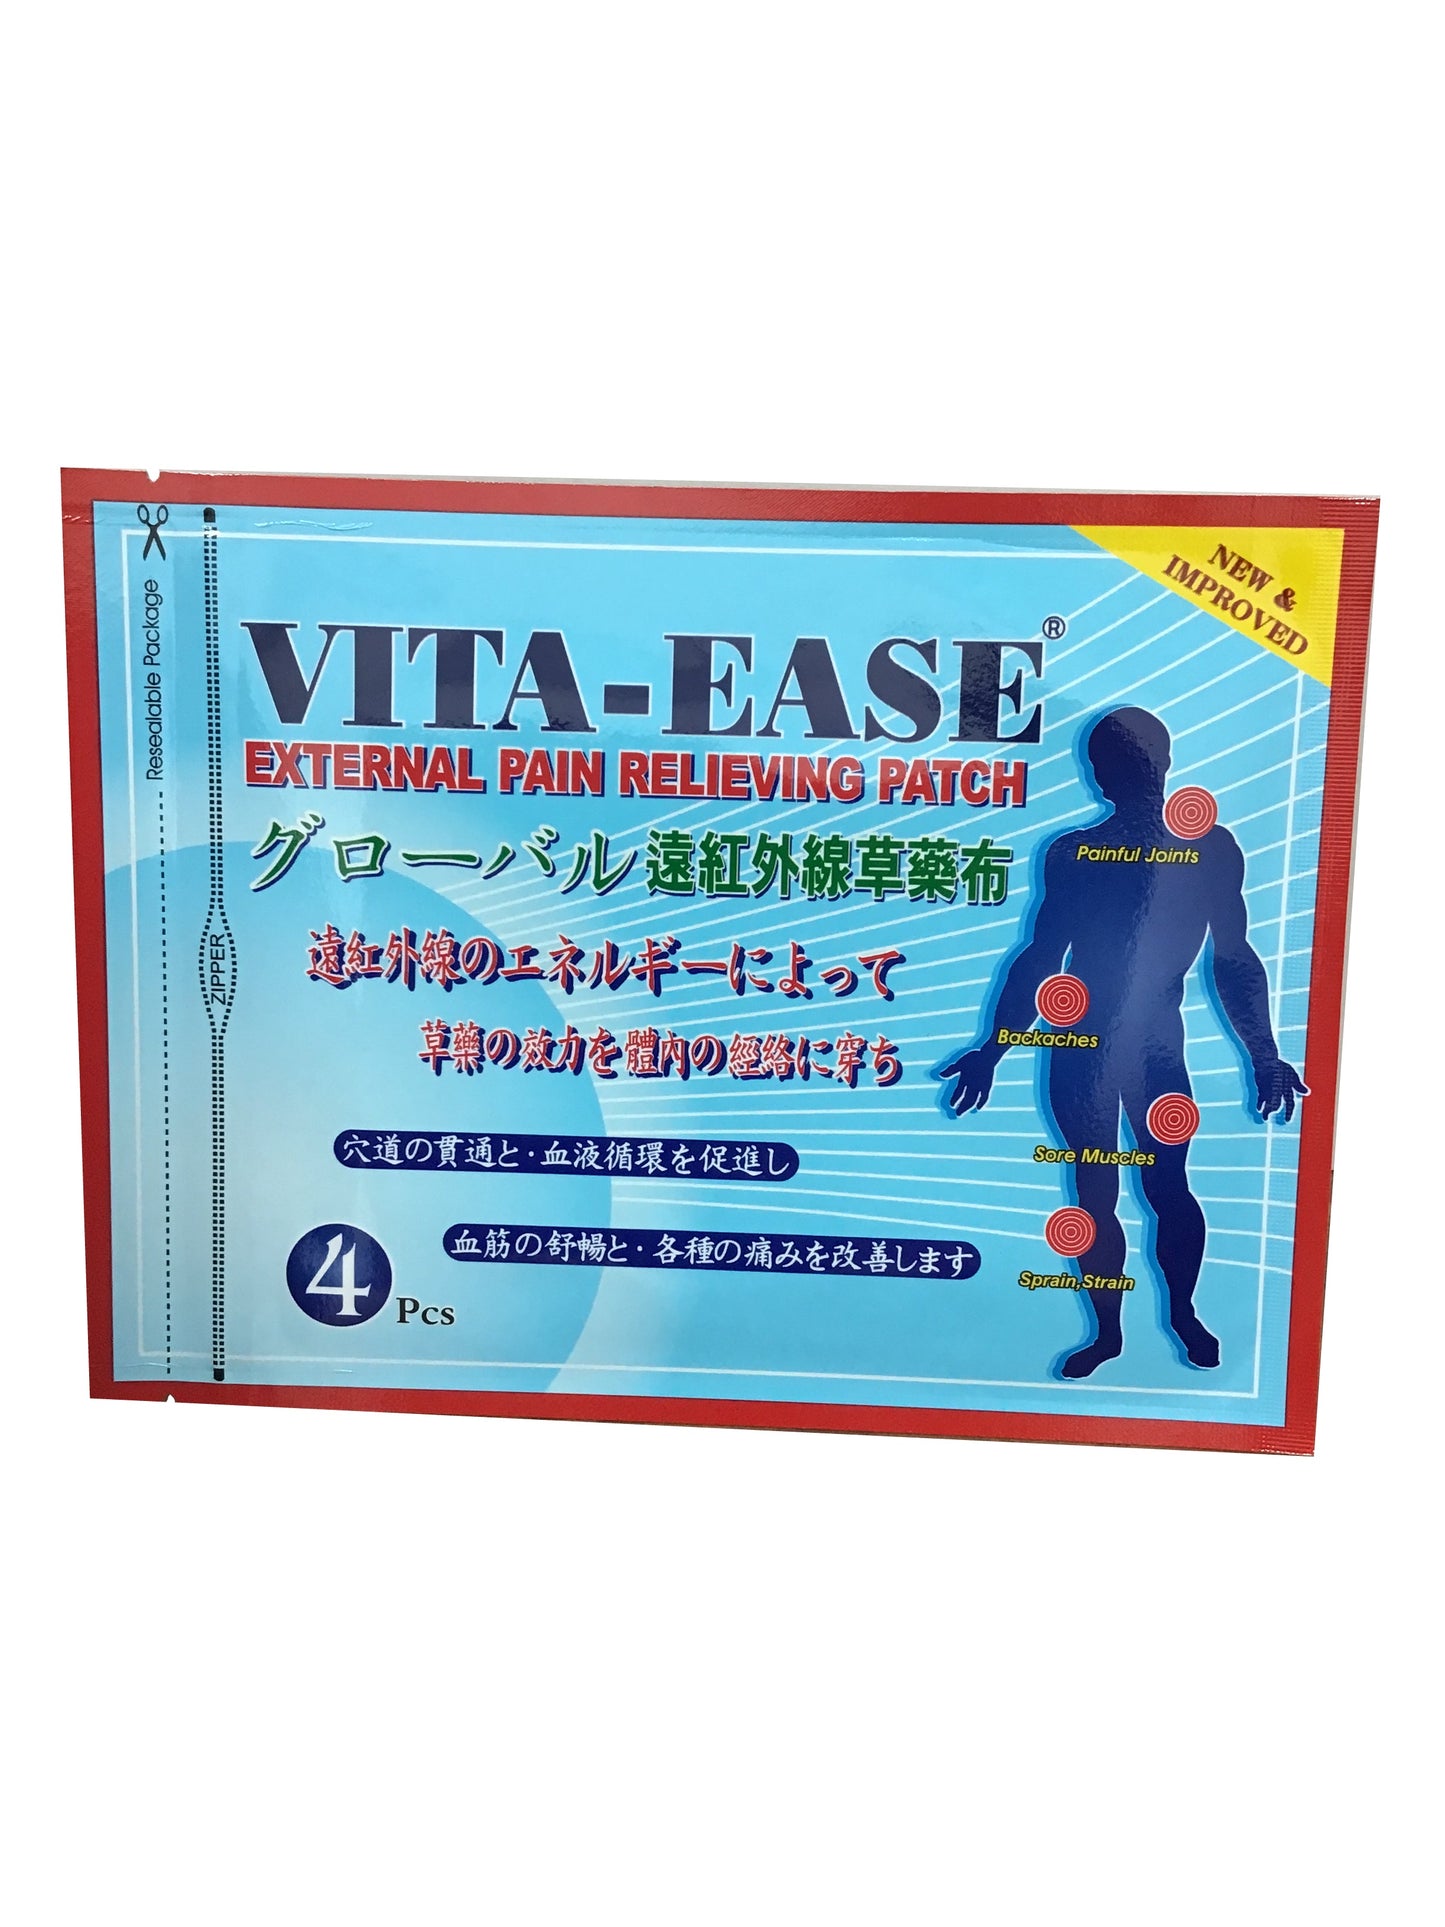 Vita-Ease 4Pcs External Pain Relieving Patch 遠紅外線草藥布